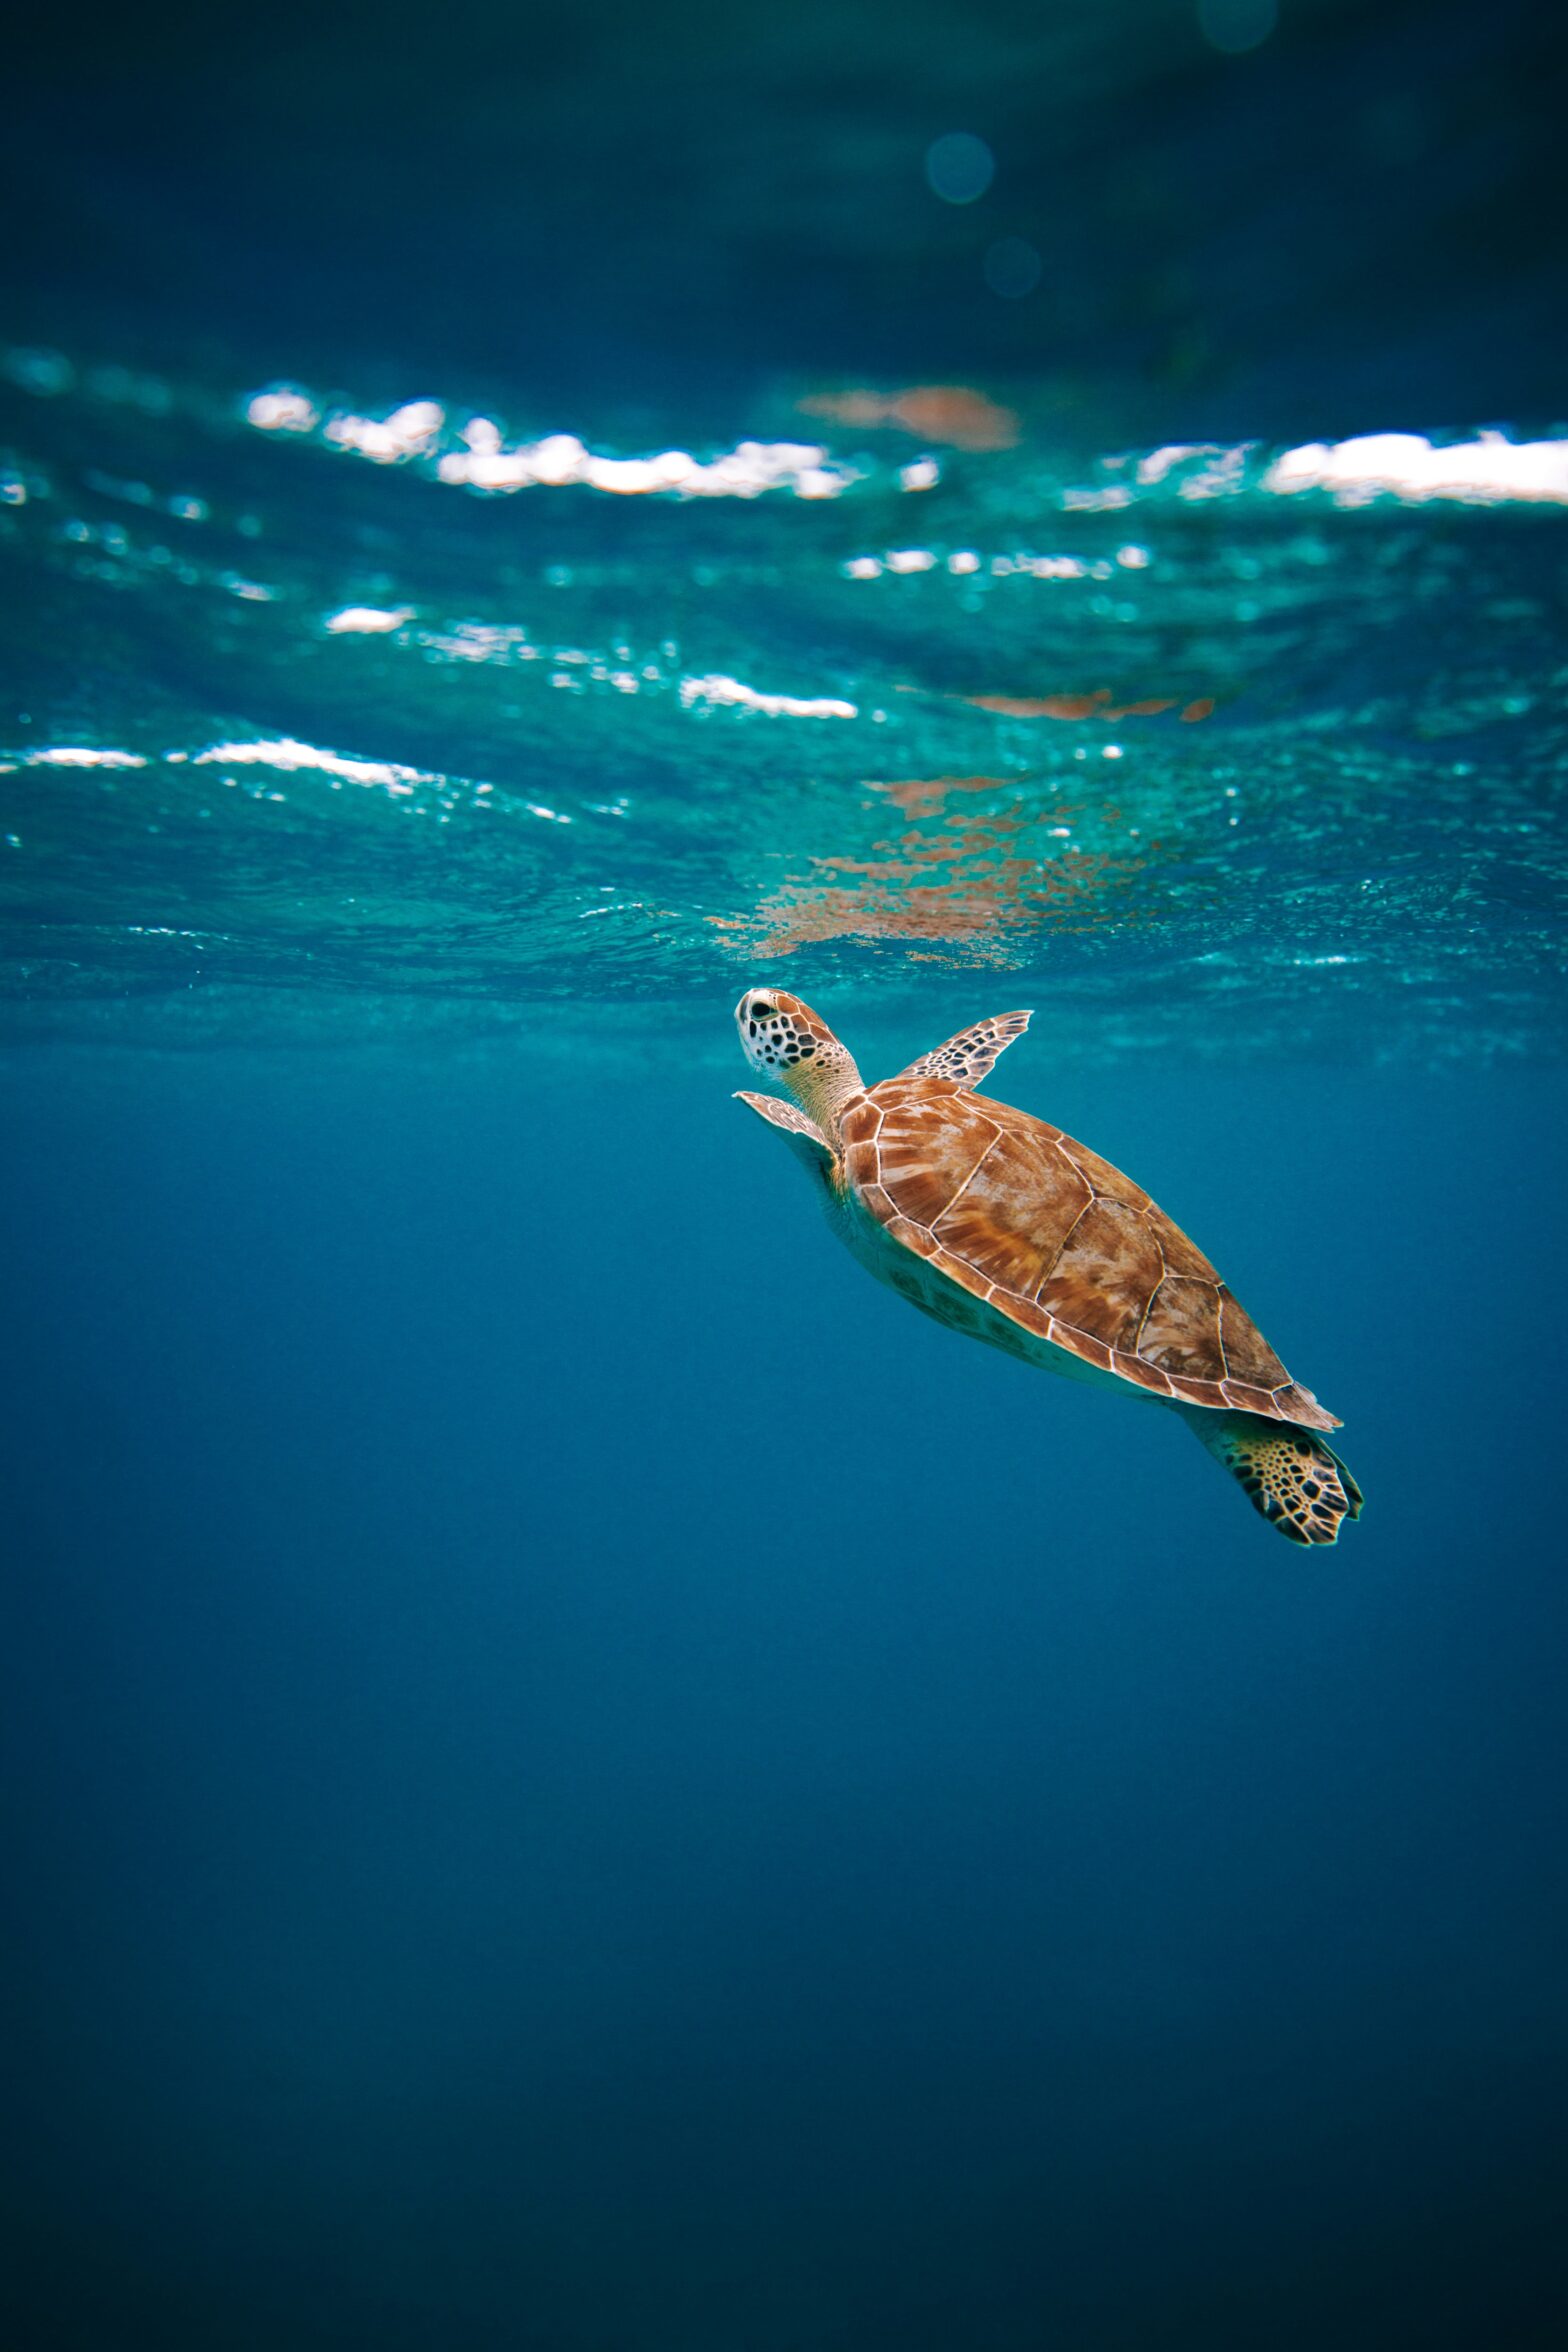 teknős az óceán vizében